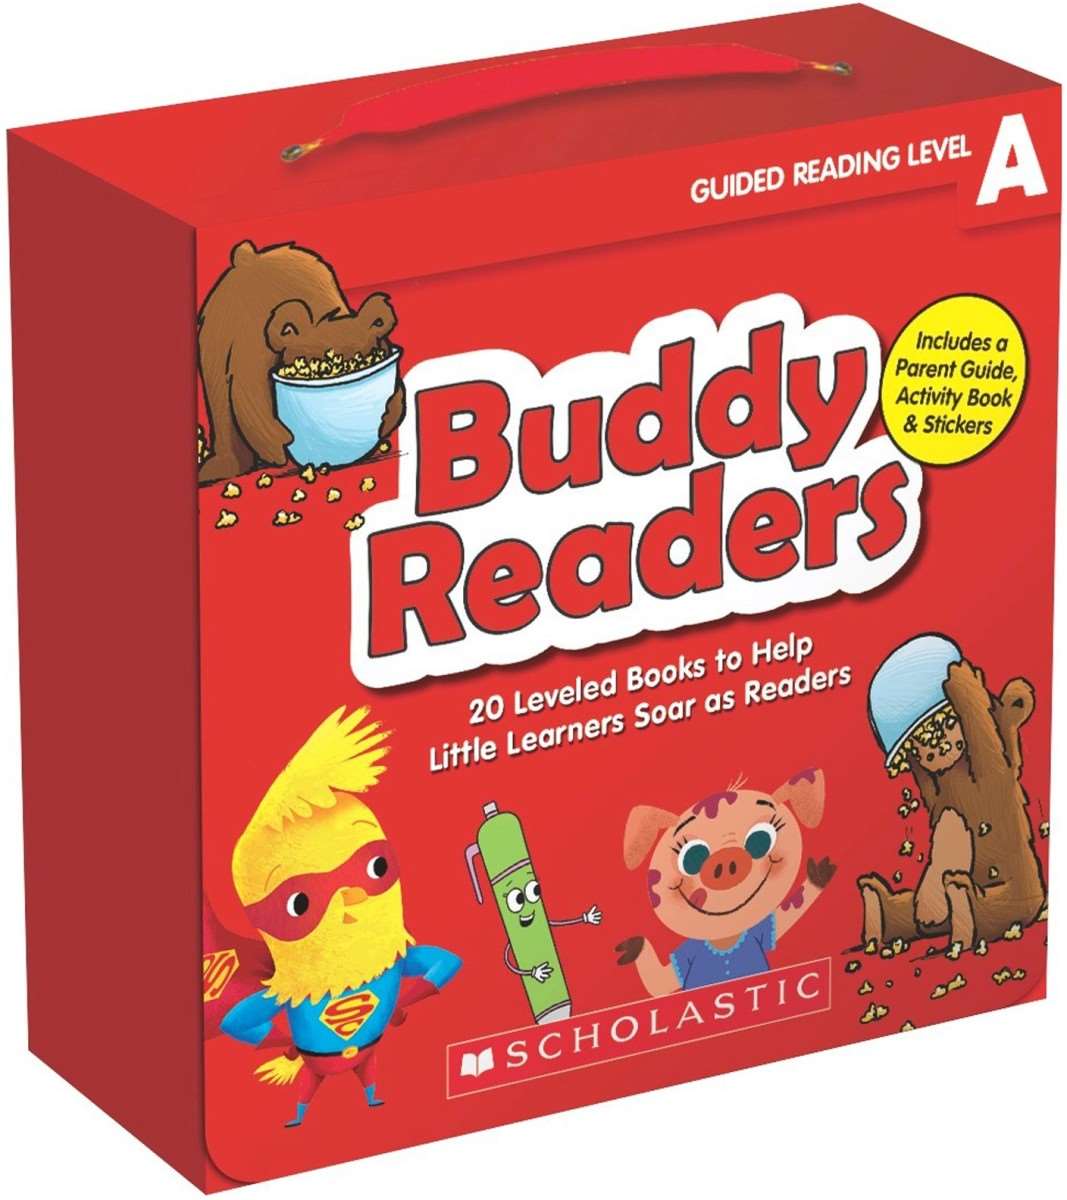 Бади на английском. Scholastic игры. Level books. Бадди английский для детей Космо ящики. Reading buddies.